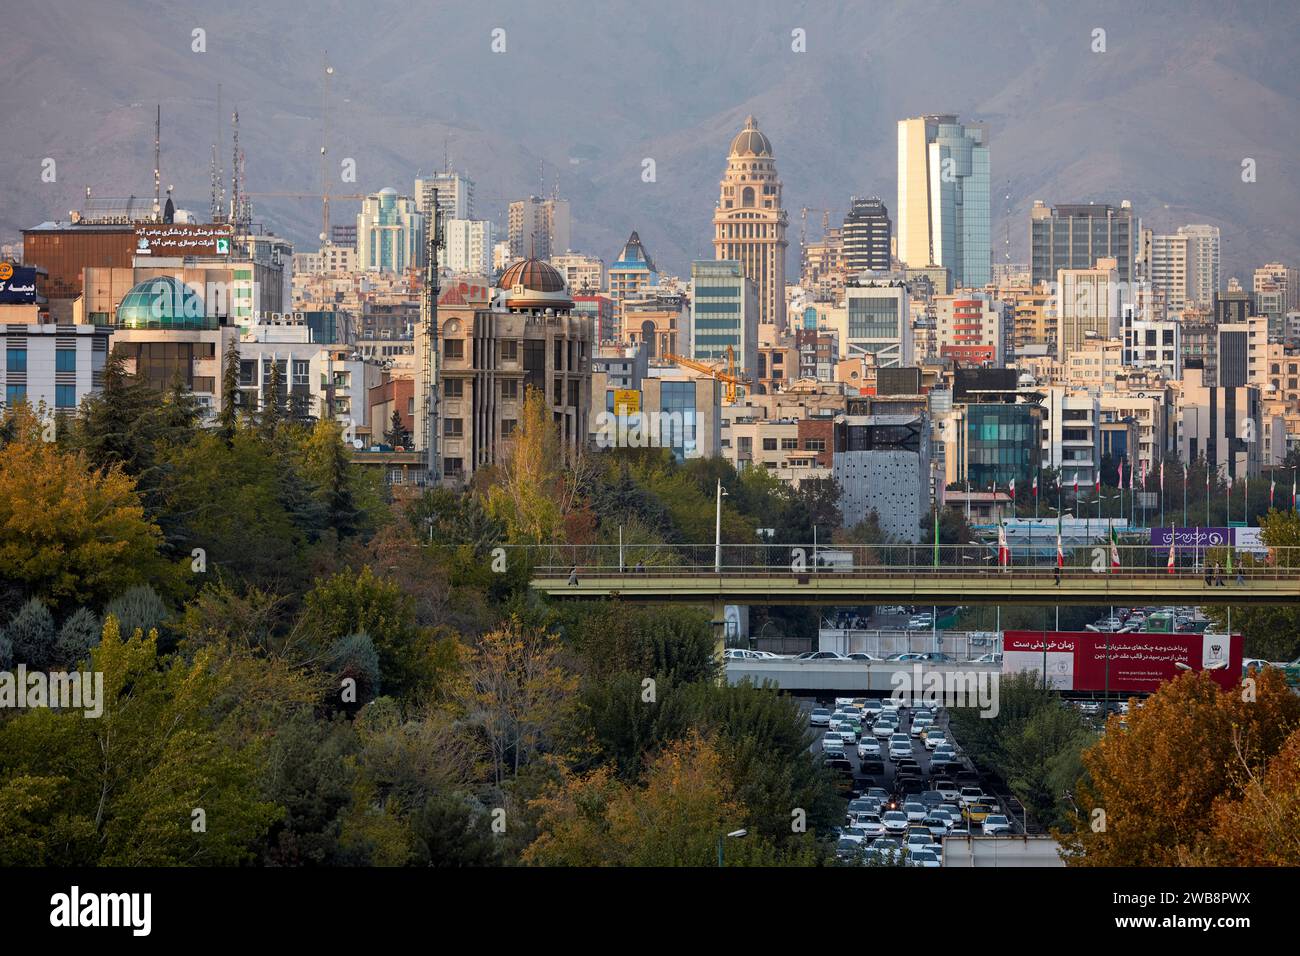 Panoramablick auf den nördlichen Teil der Stadt Teheran von der Tabiat-Brücke. Teheran, Iran. Stockfoto